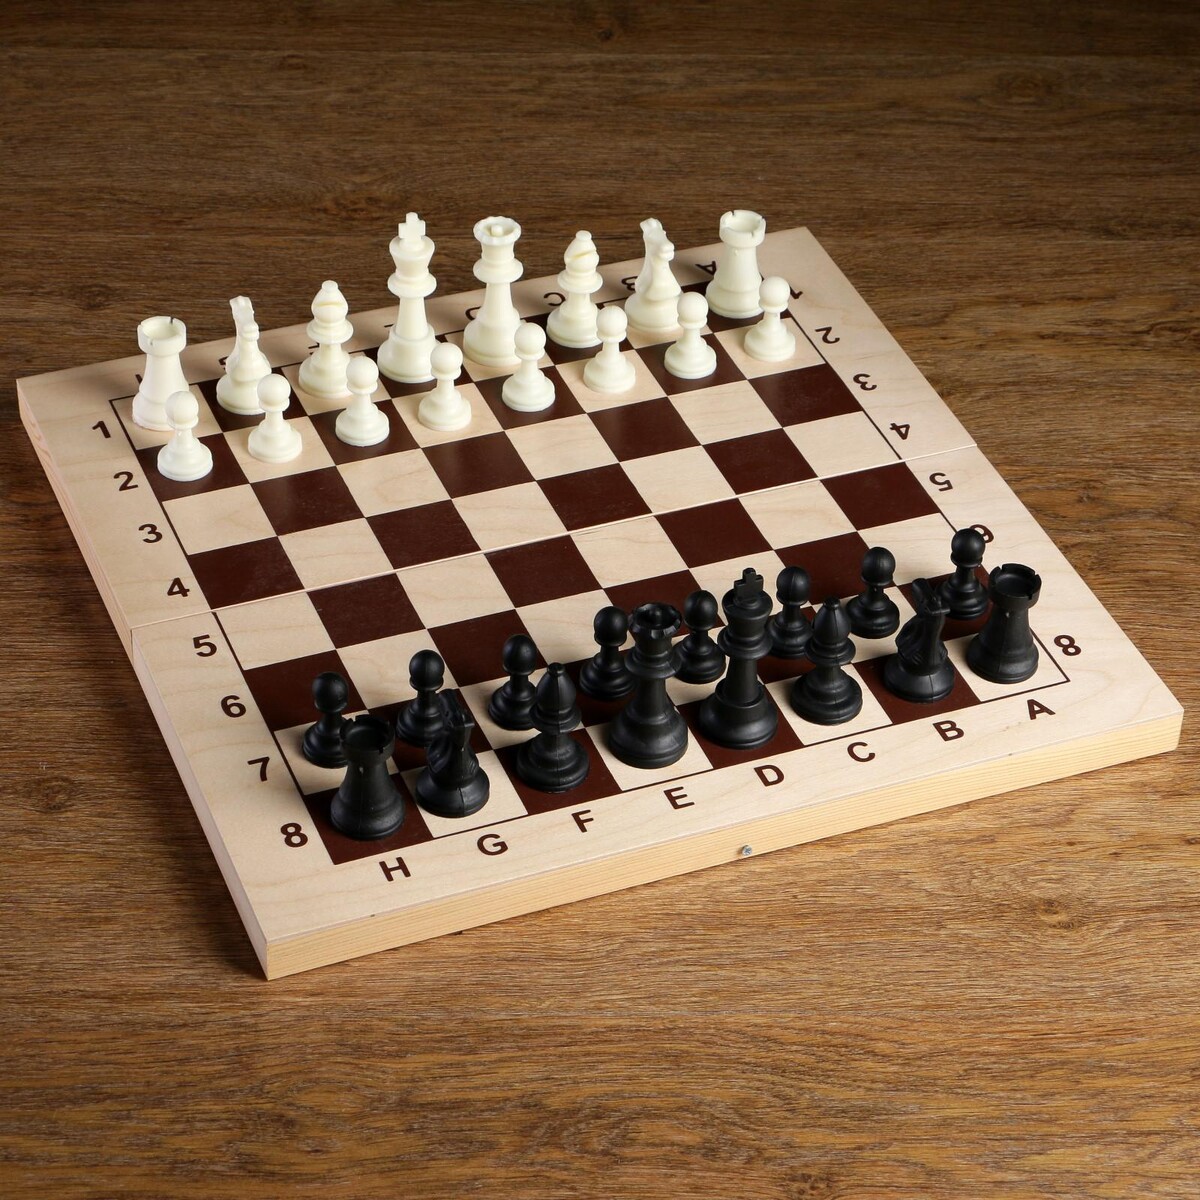 Шахматные фигуры, пластик, король h-9 см, пешка h-4.1 см шахматные фигуры гроссмейстерские